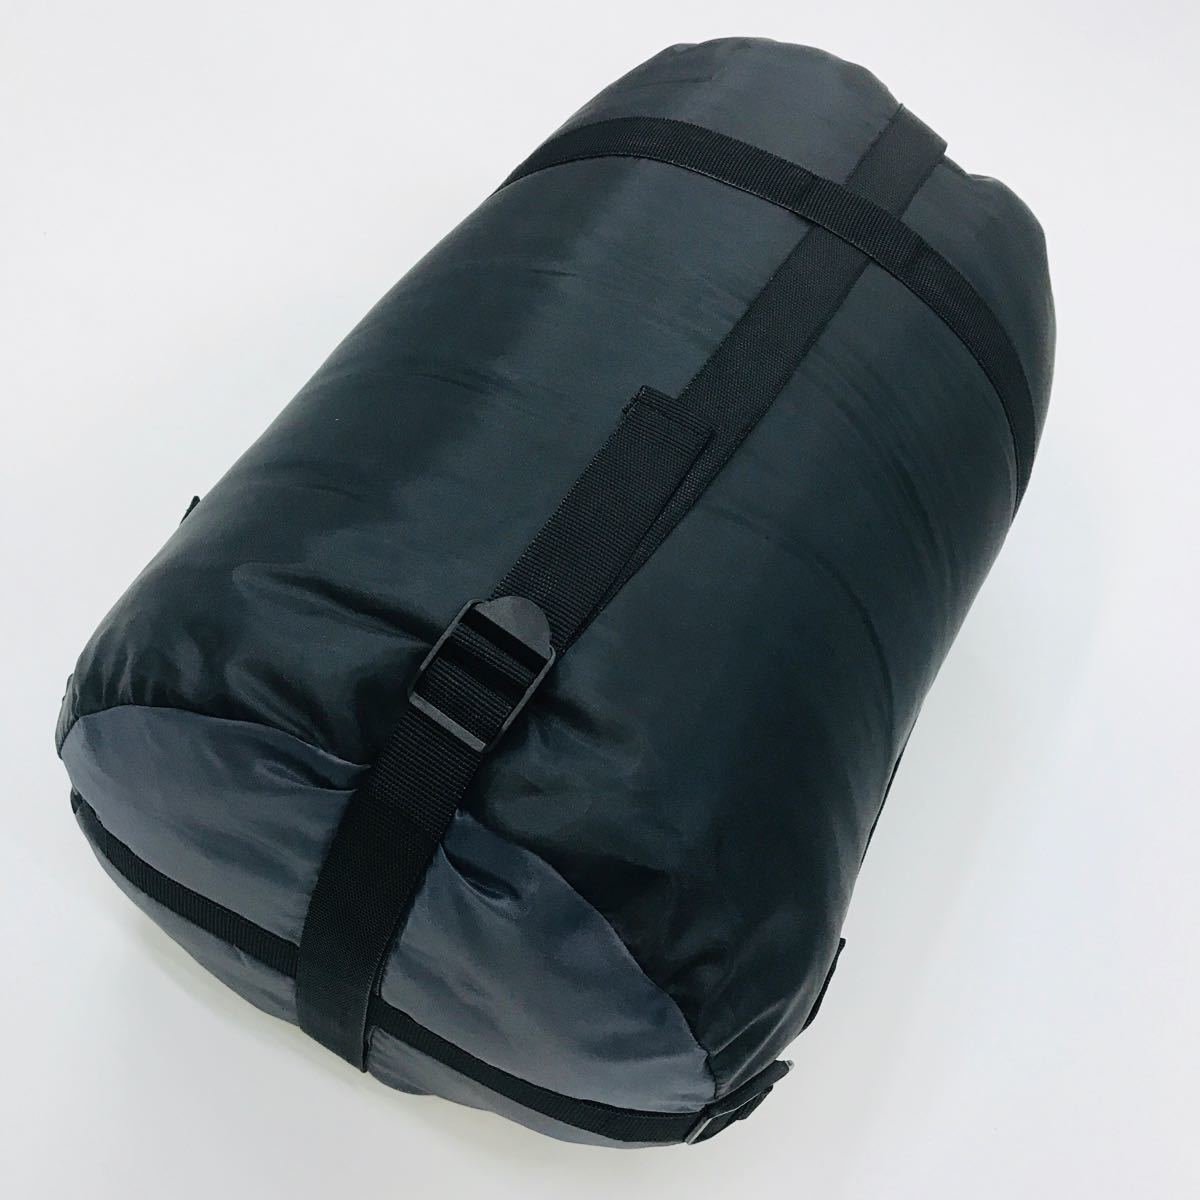 ★新品★ 寝袋 -15℃ 封筒型 キャンプ 車中泊 オールシーズン対応 黒